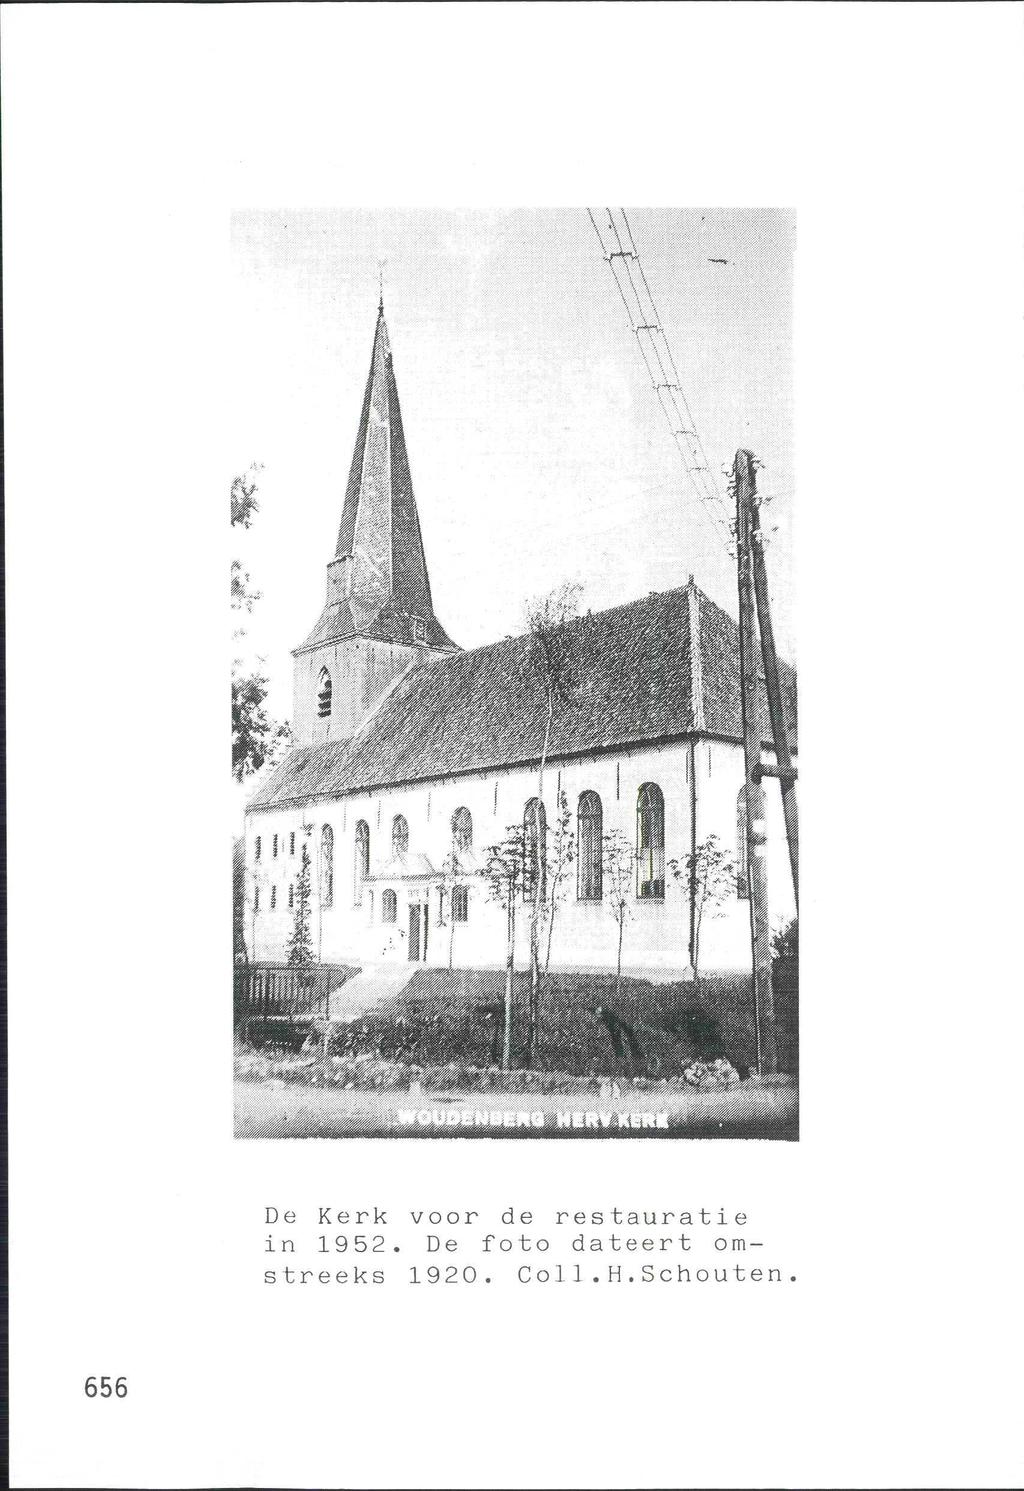 656 De Kerk voor de restauratie in 1952.